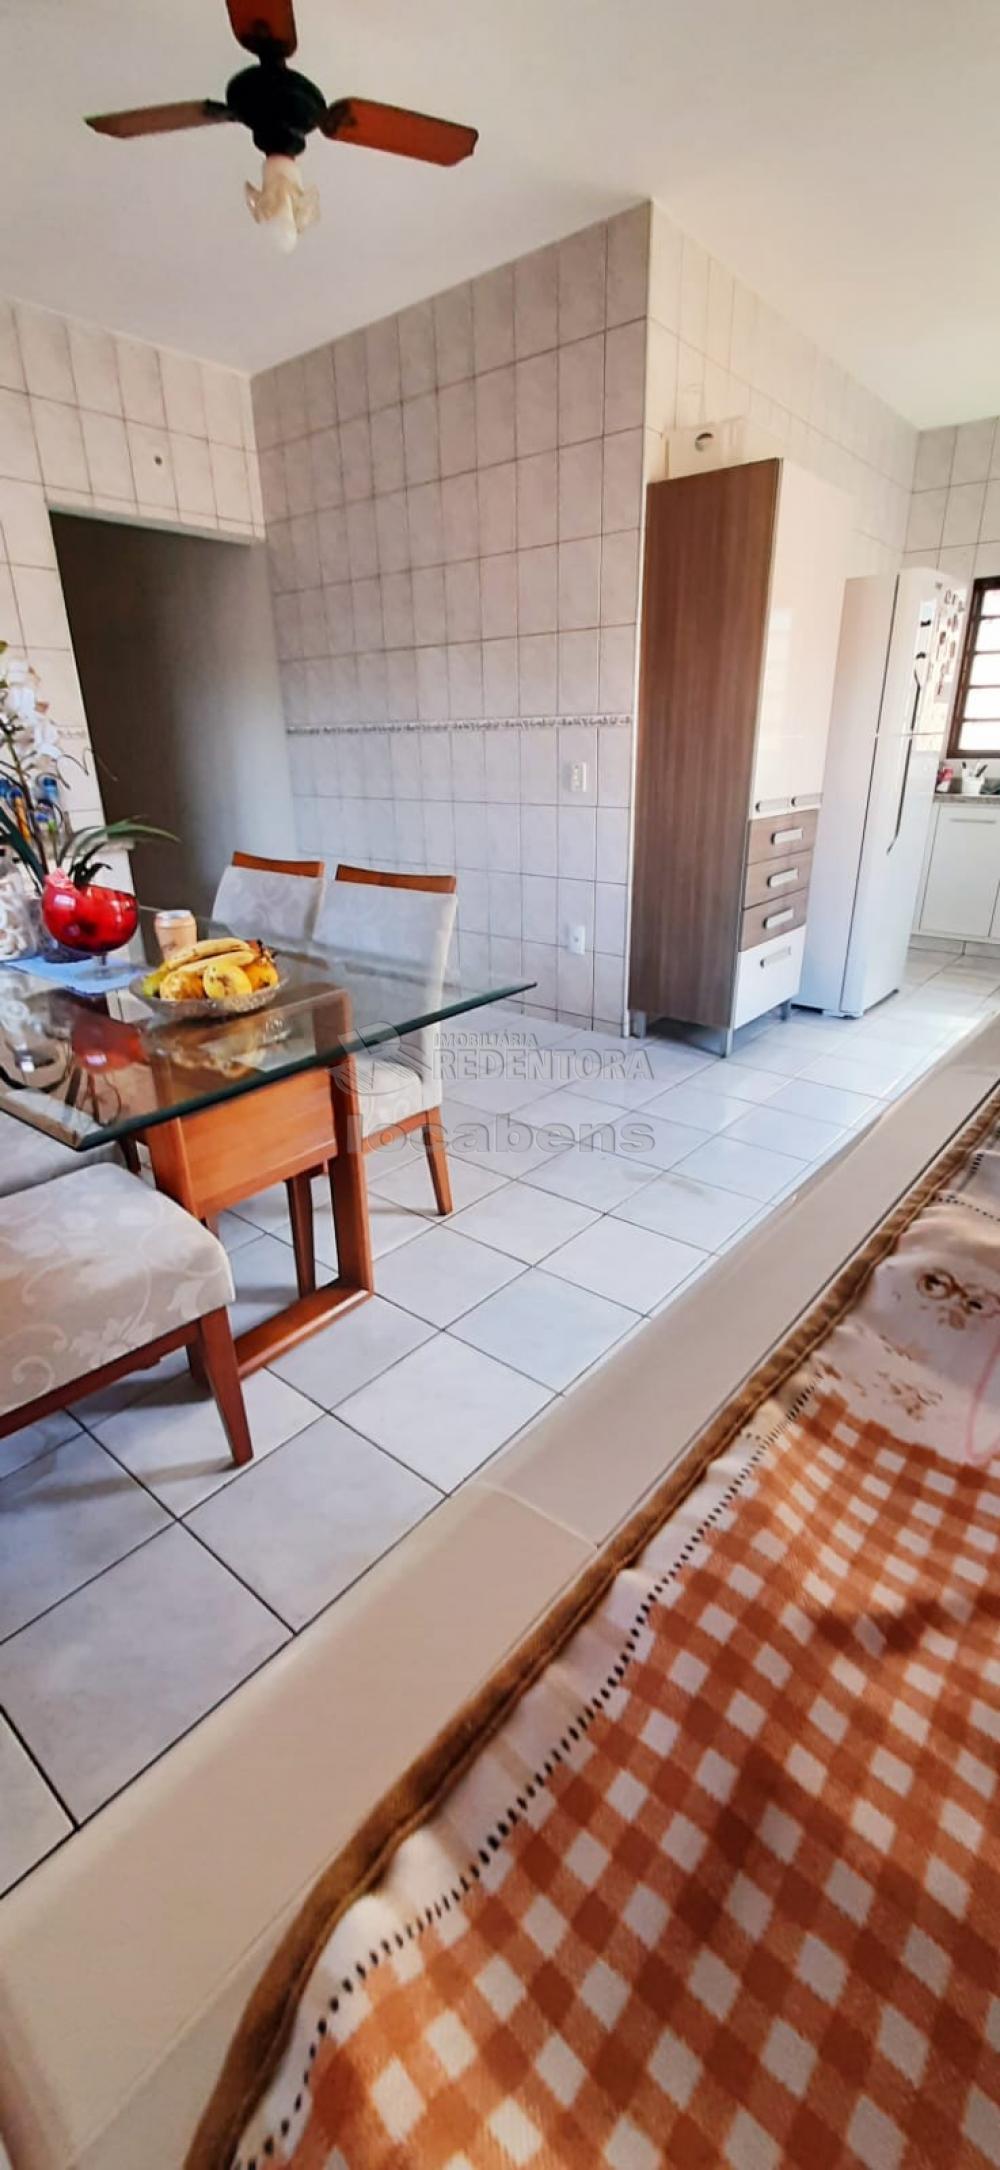 Comprar Casa / Padrão em São José do Rio Preto R$ 320.000,00 - Foto 11